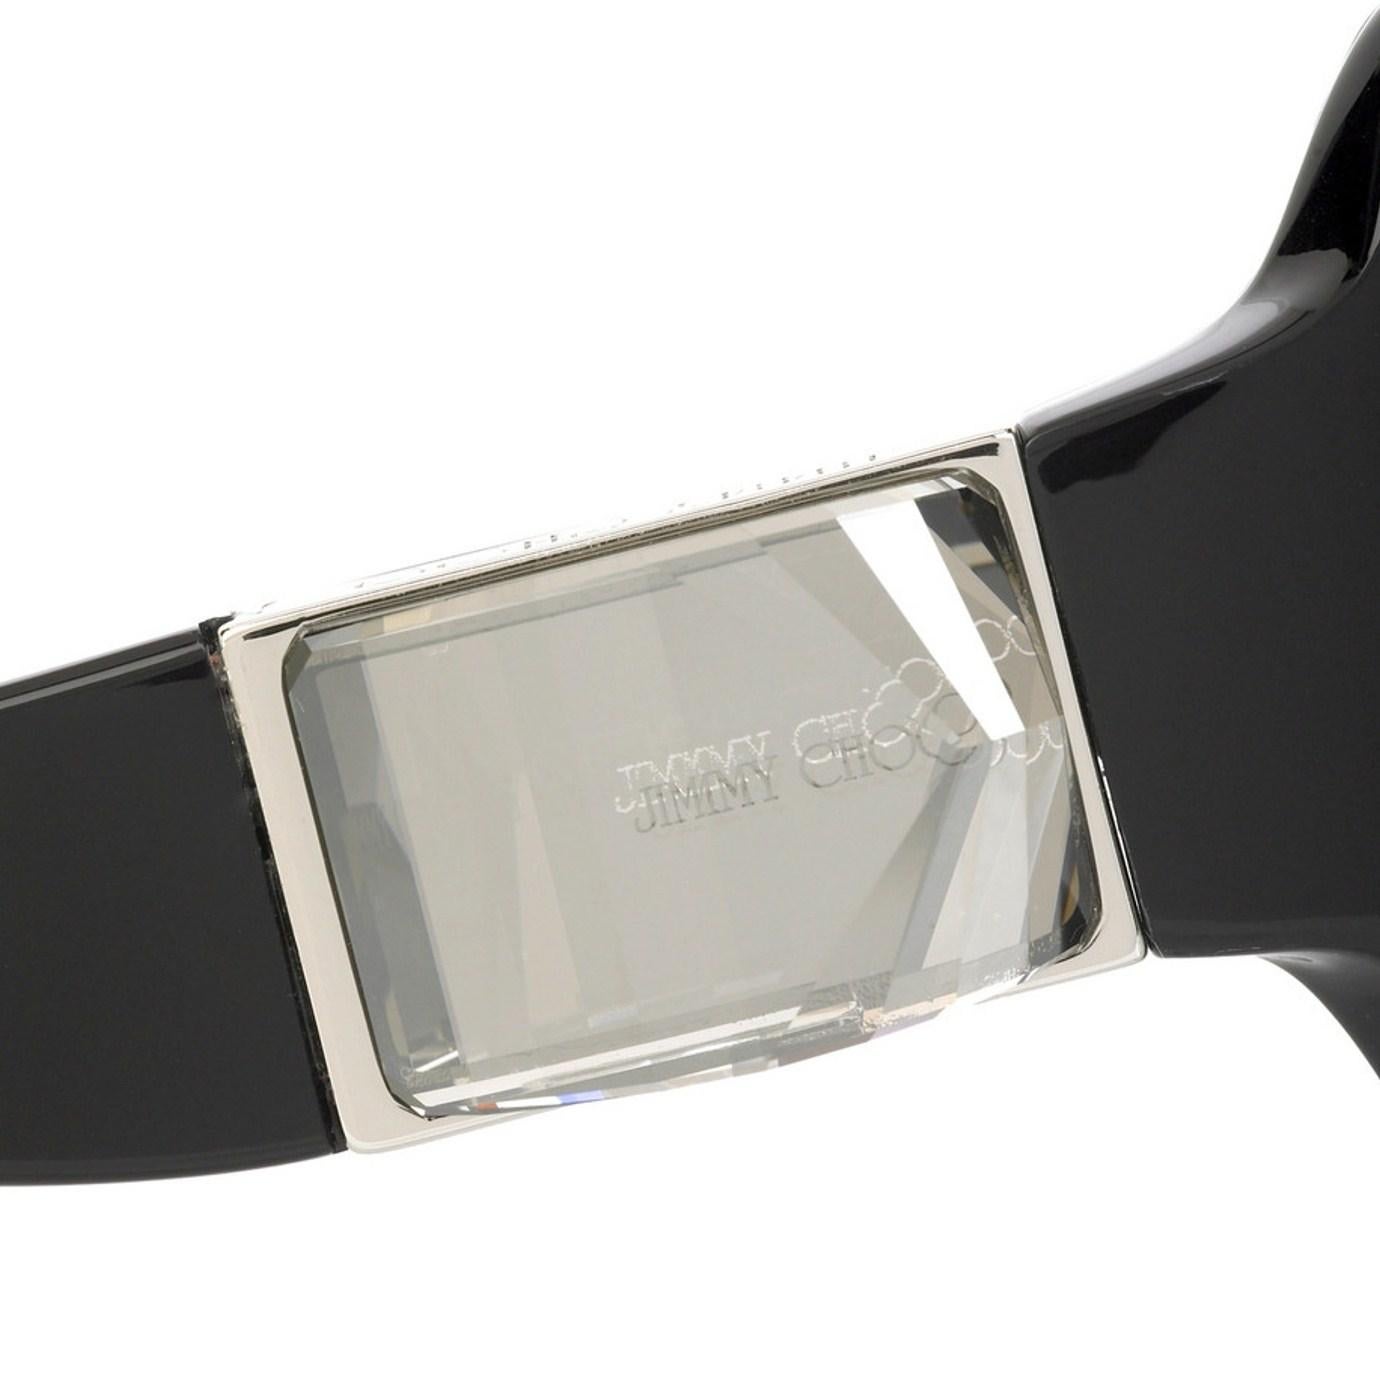 Neu Jimmy Choo Swarovski-Sonnenbrille mit Etui und Schachtel $595 2